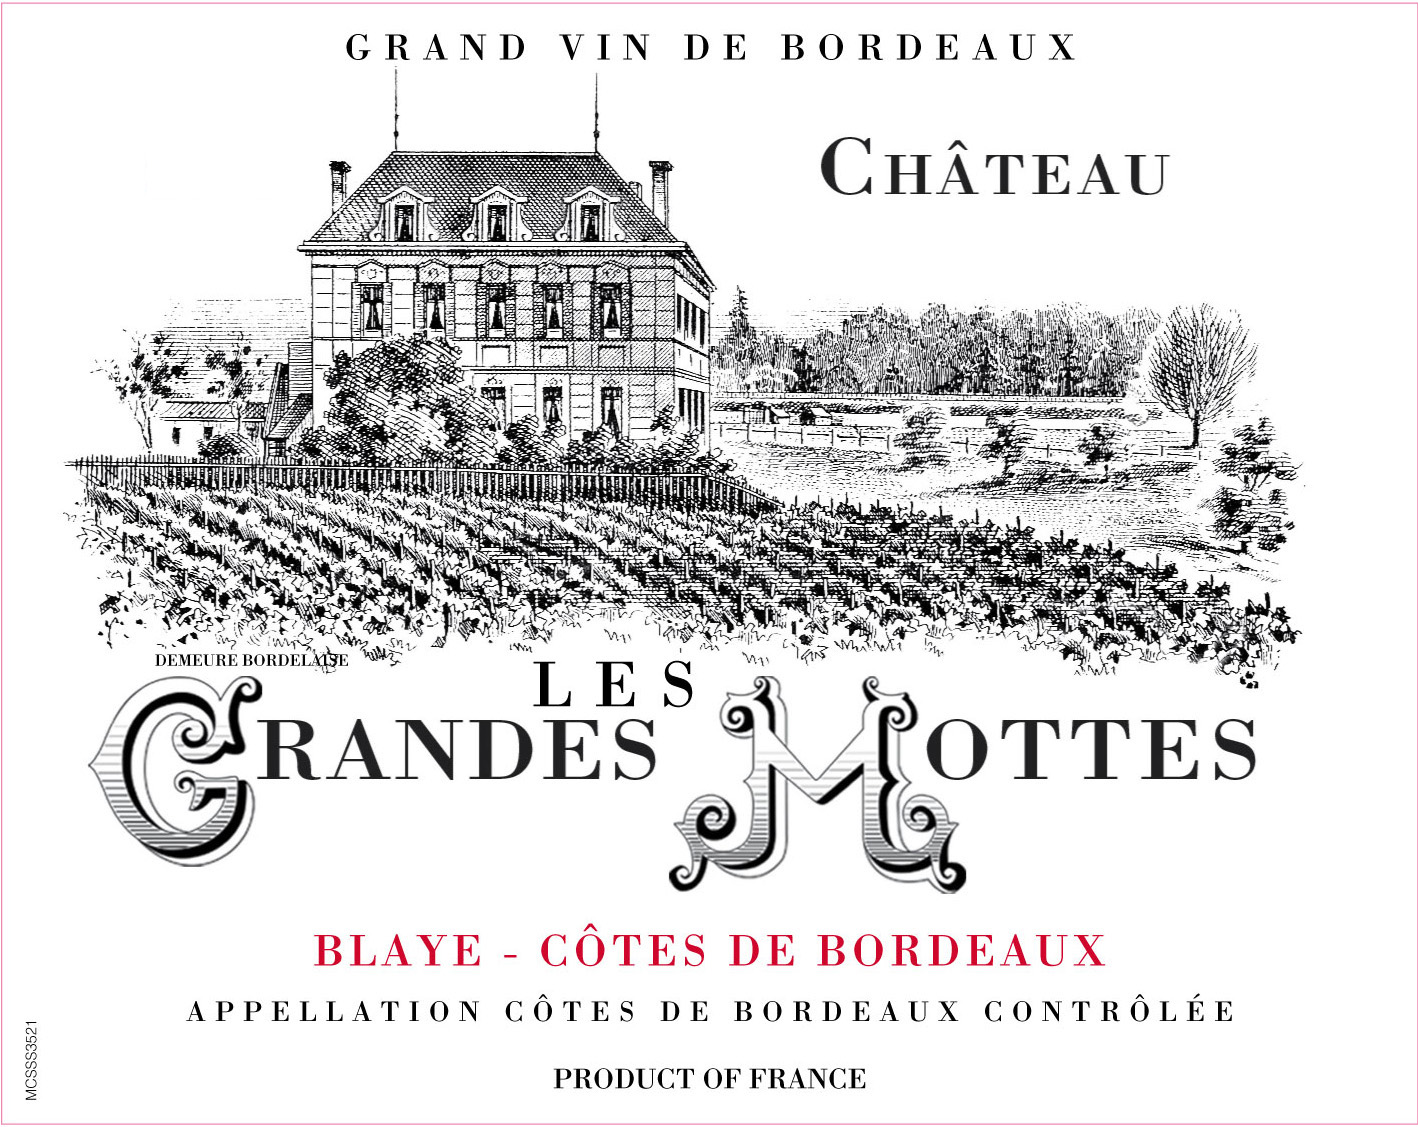 Chateau Les Grandes Mottes label